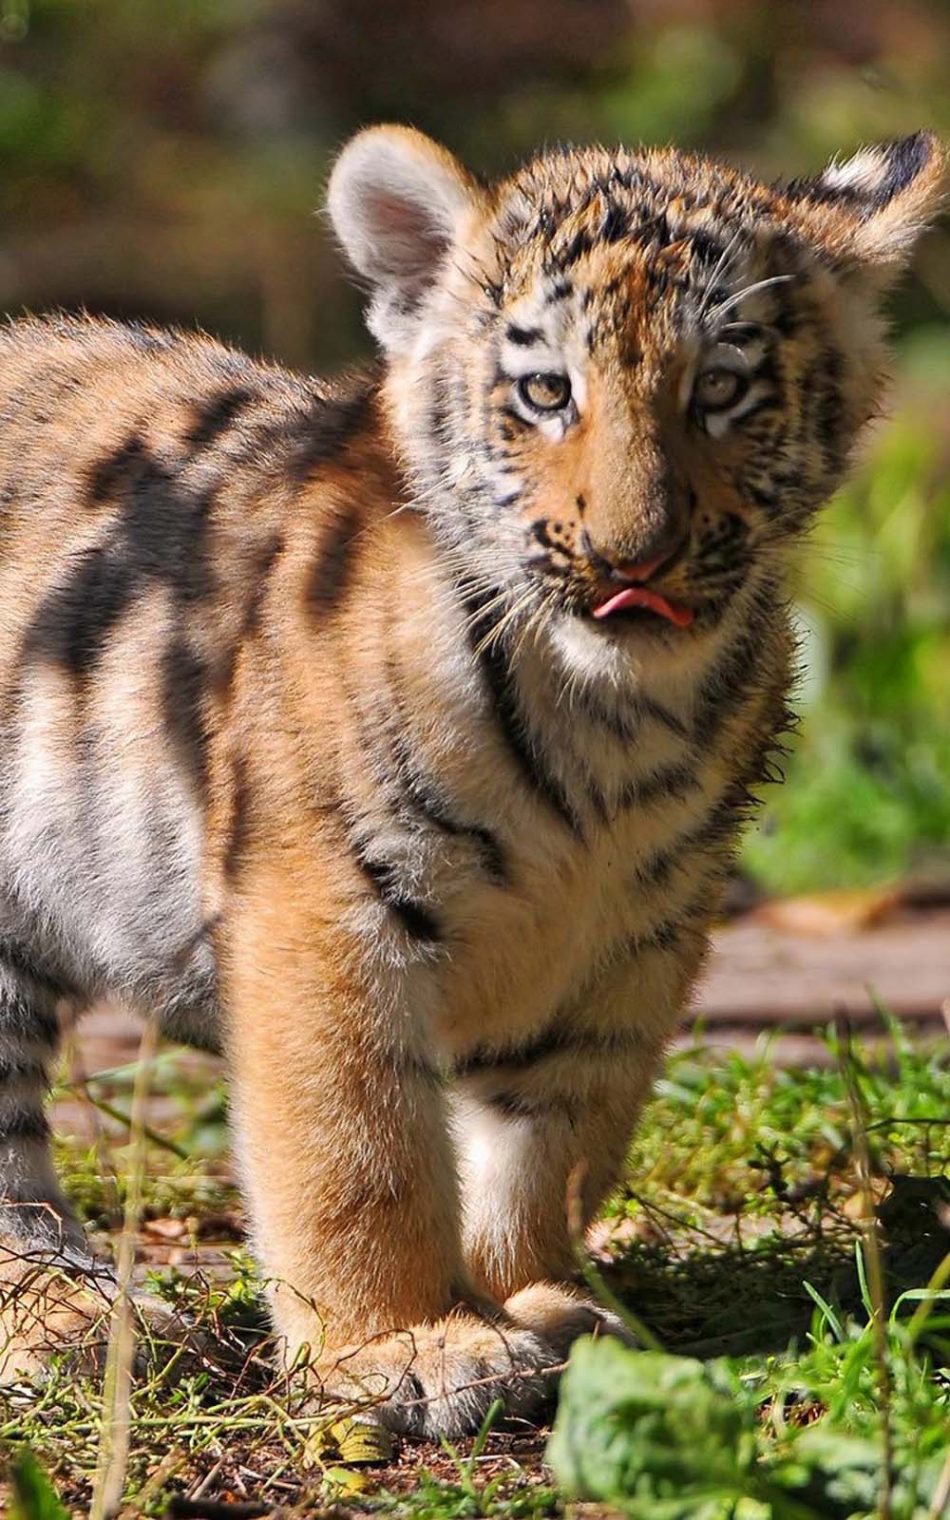 Tiger Cub Hd Mobile Wallpaper - Tiger Cub Images Hd Download - HD Wallpaper 